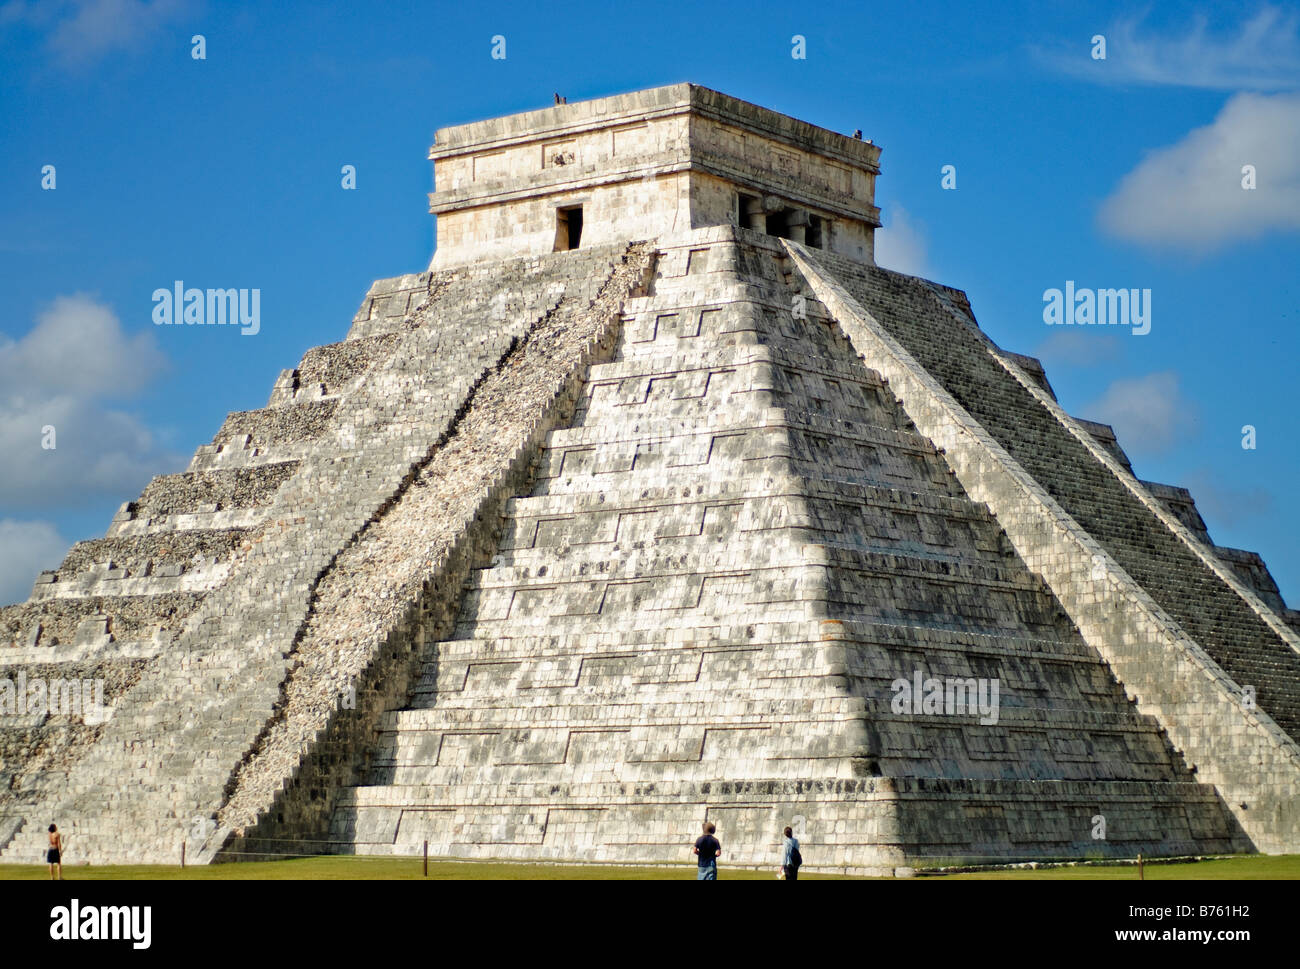 CHICHEN ITZA, Mexiko - El Castillo (auch bekannt als Tempel von Kuklcan) an den antiken Maya-Ruinen in Chichen Itza, Yucatan, Mexiko 081216094230 1949x.tif. Chichen Itza befindet sich auf der Yucatan-Halbinsel in Mexiko und ist eine bedeutende archäologische Stätte, die die reiche Geschichte und fortgeschrittene wissenschaftliche Kenntnisse der alten Maya-Zivilisation zeigt. Sie ist vor allem bekannt für die Kukulkan Pyramide, oder „El Castillo“, eine vierseitige Struktur mit 91 Stufen auf jeder Seite, die in einem einzigen Schritt auf der Spitze gipfelt, um die 365 Tage des Sonnenjahres zu repräsentieren. Stockfoto